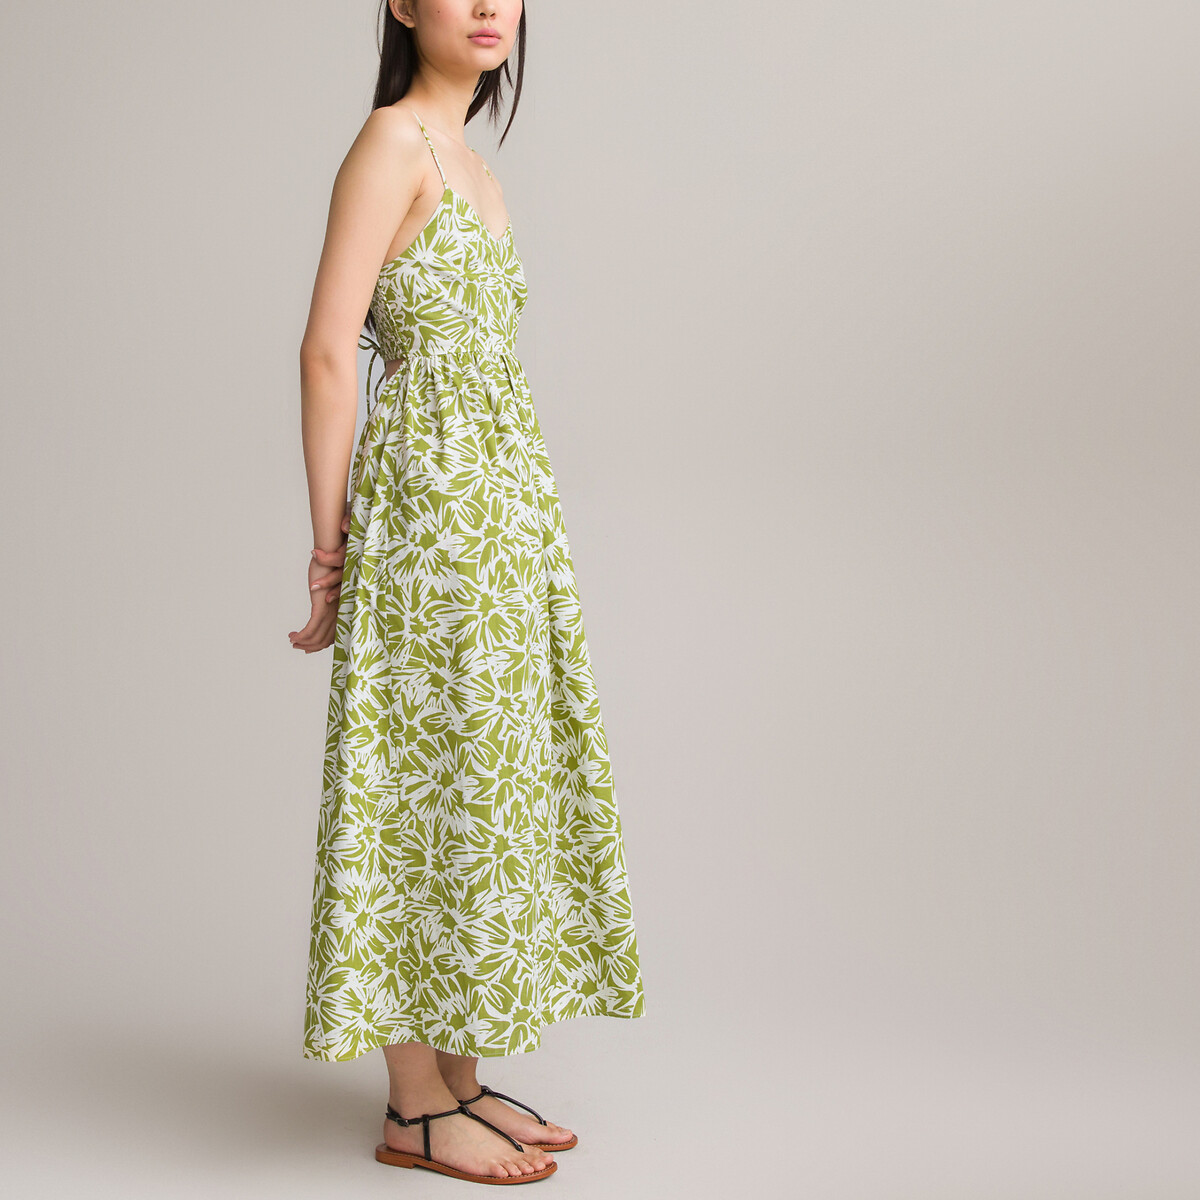 Платье-миди Тонкие бретели с принтом 52 зеленый LaRedoute, размер 52 - фото 4